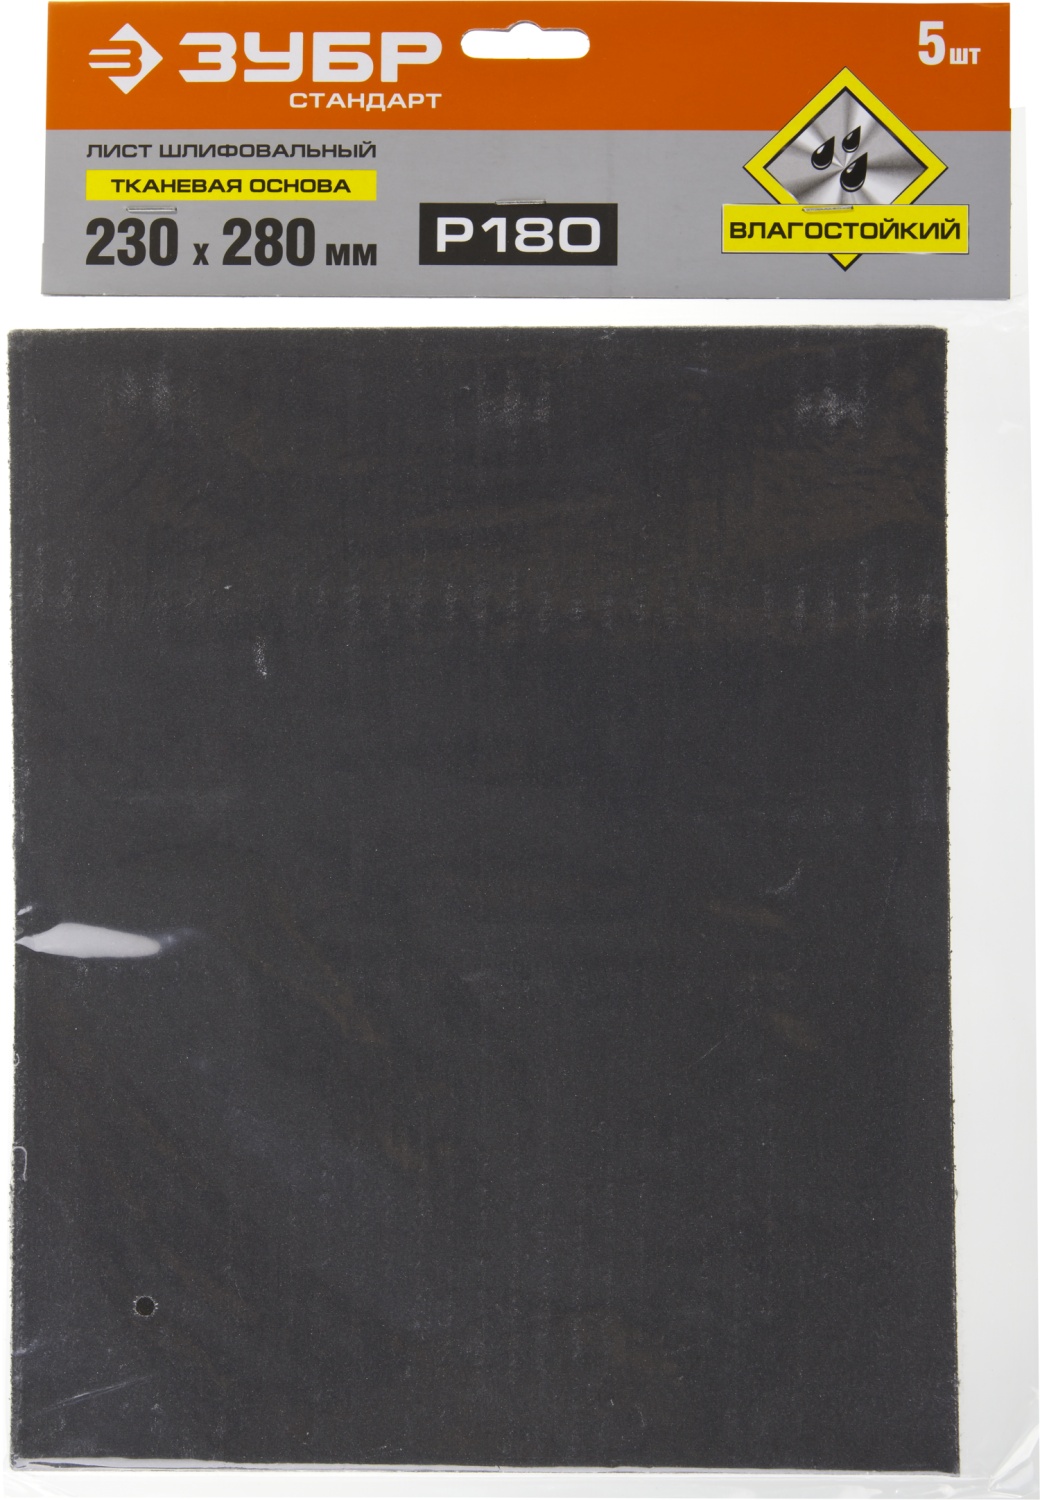 Лист шлифовальный водостойкий 230х280 мм ЗУБР Стандарт, тканевая основа, 5 шт - фото